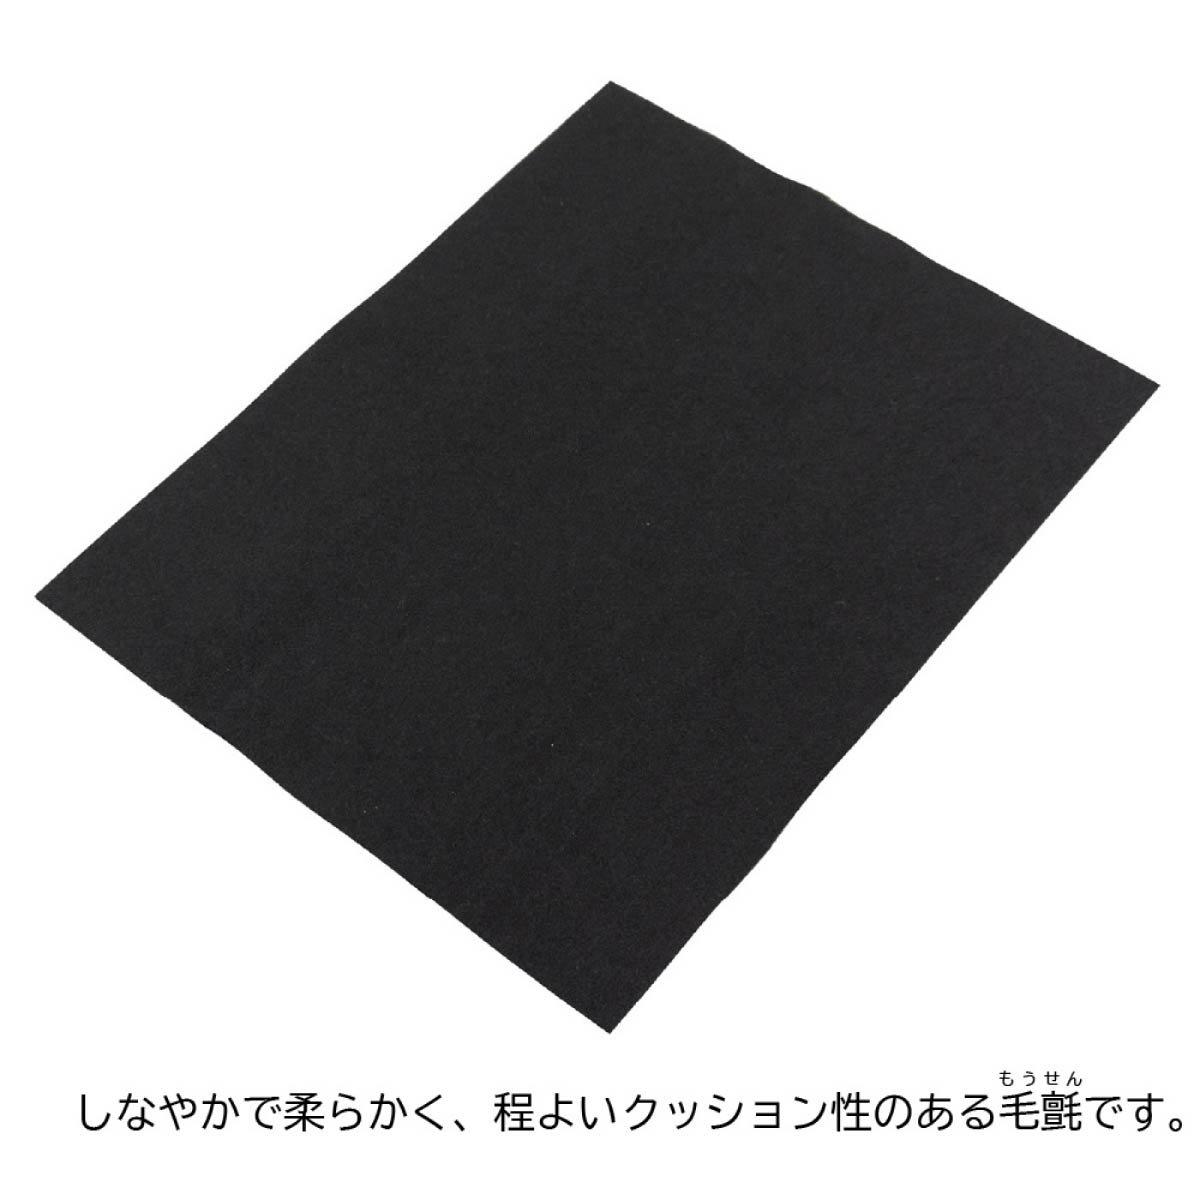 a... внизу . Mino штамп шерсть .2 мм чёрный Y-AE-11 ( кошка pohs возможно )